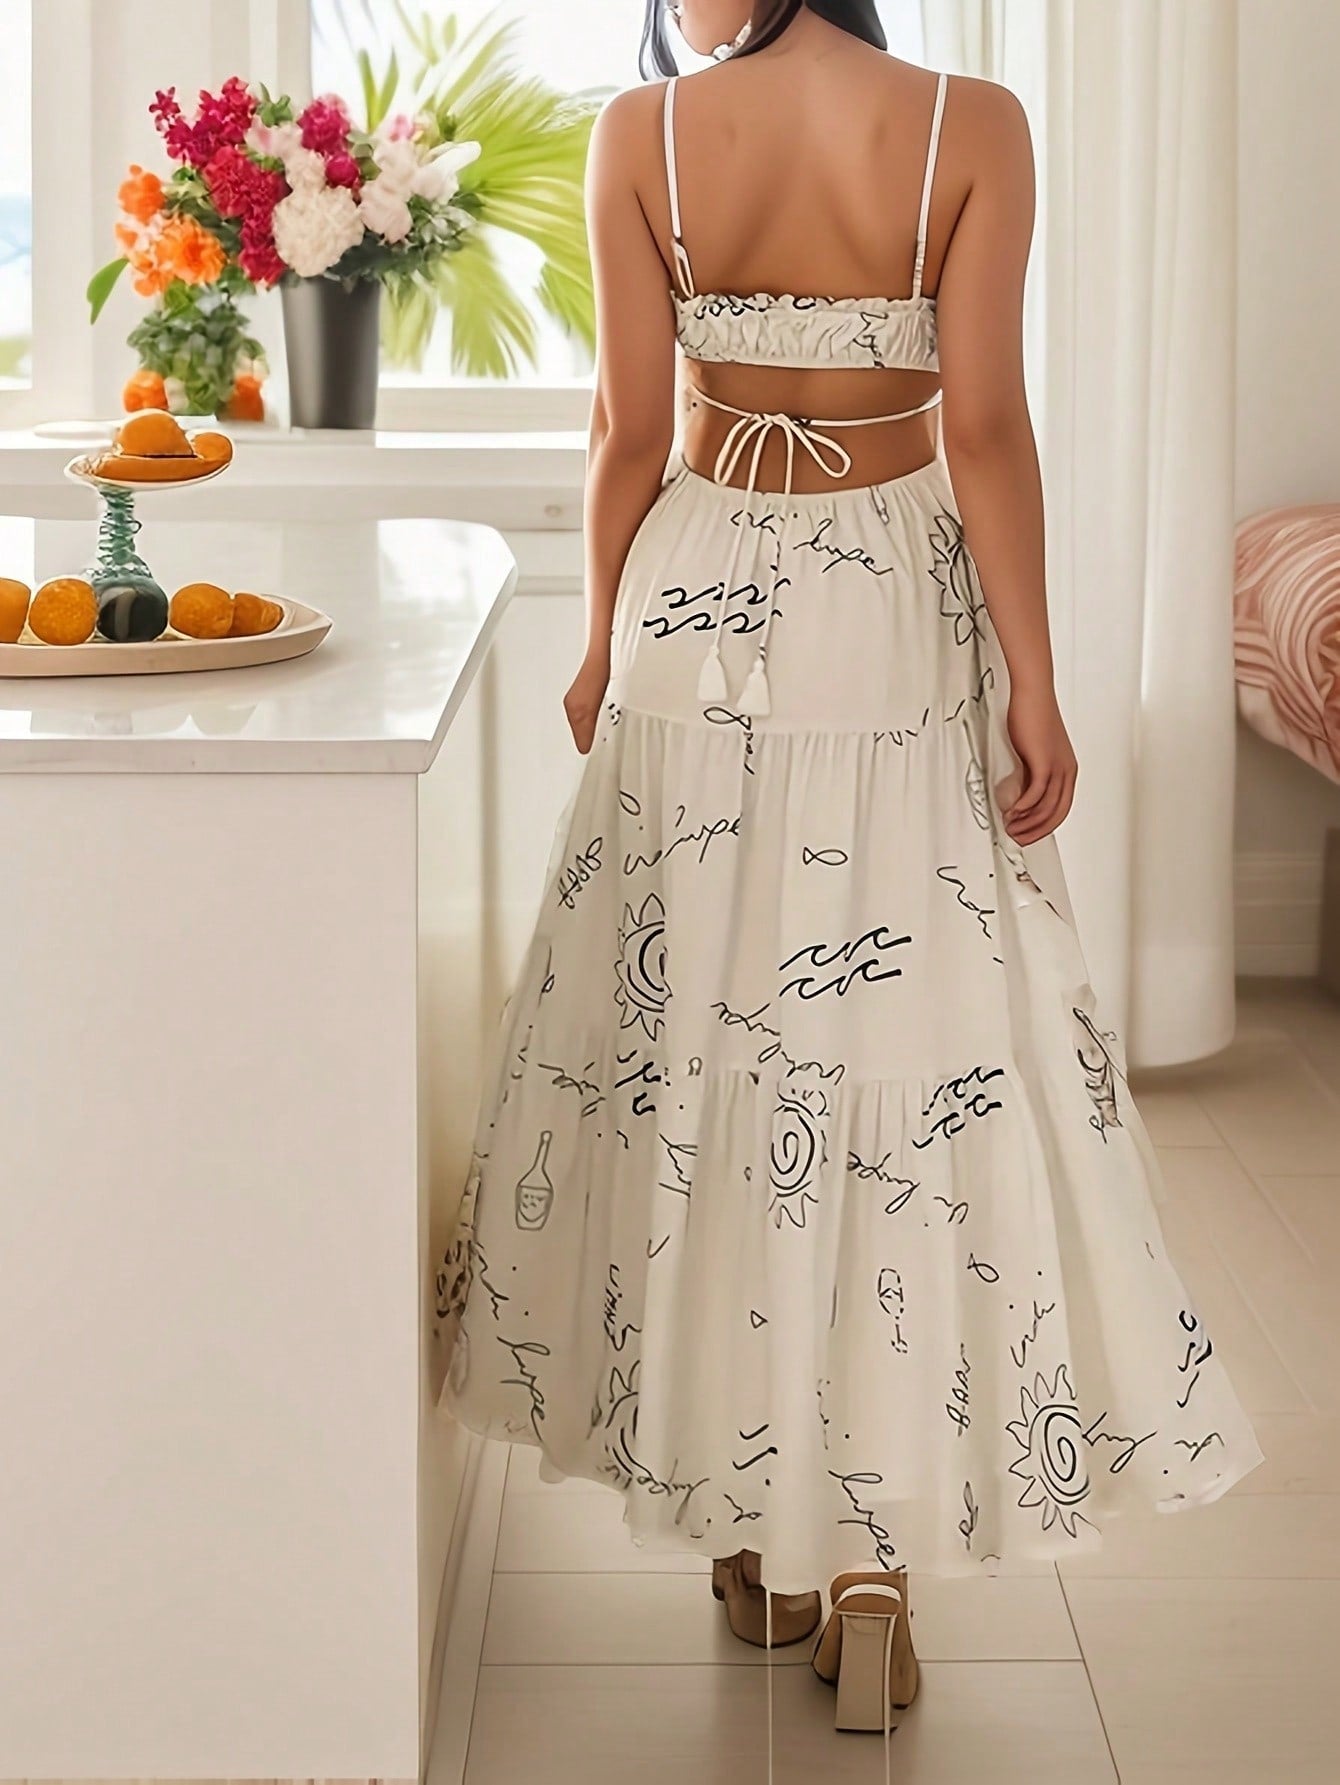 Frenchy Elegant Backless Solid Color Belted Dress